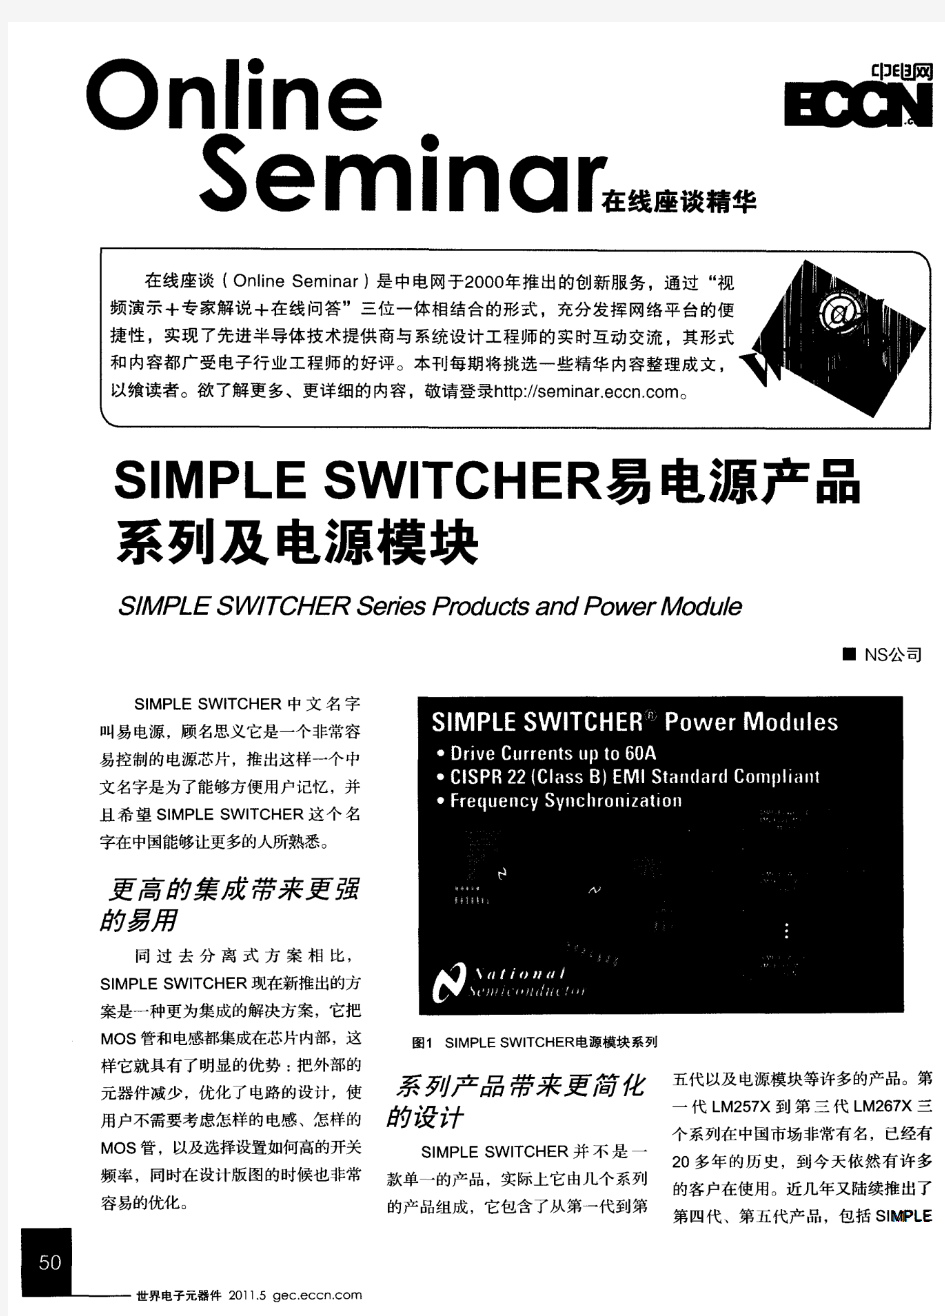 SIMPLE SWITCHER易电源产品系列及电源模块